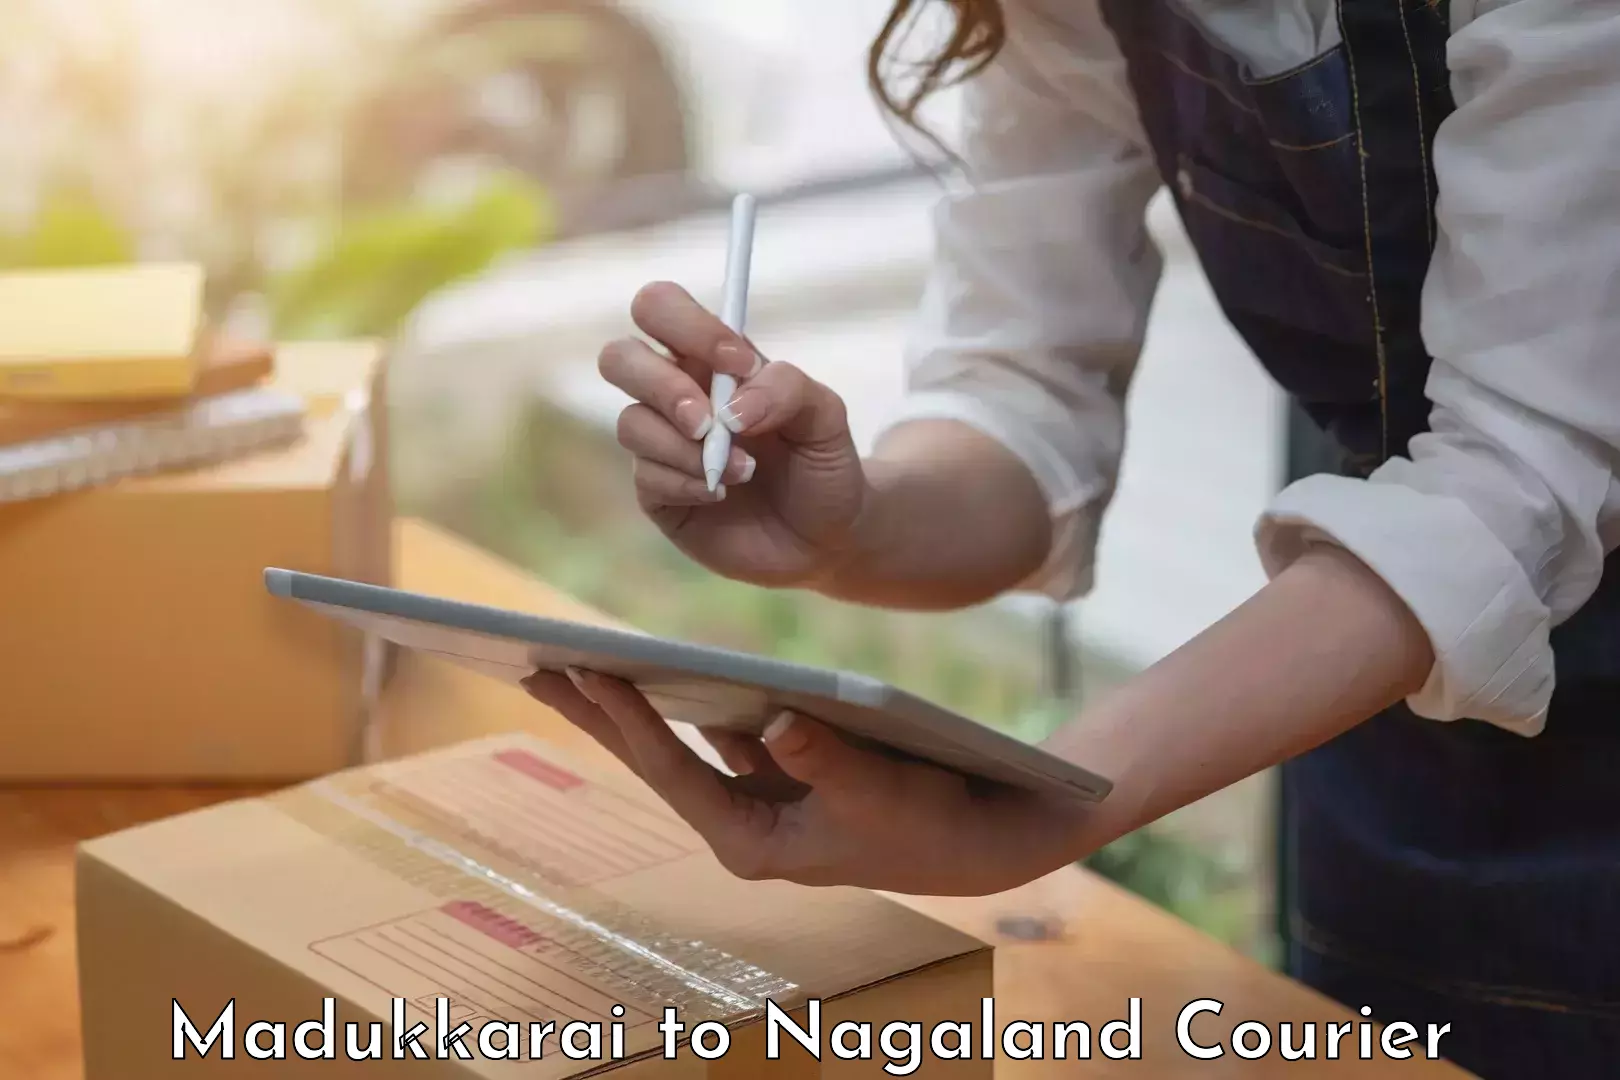 Furniture logistics in Madukkarai to Nagaland